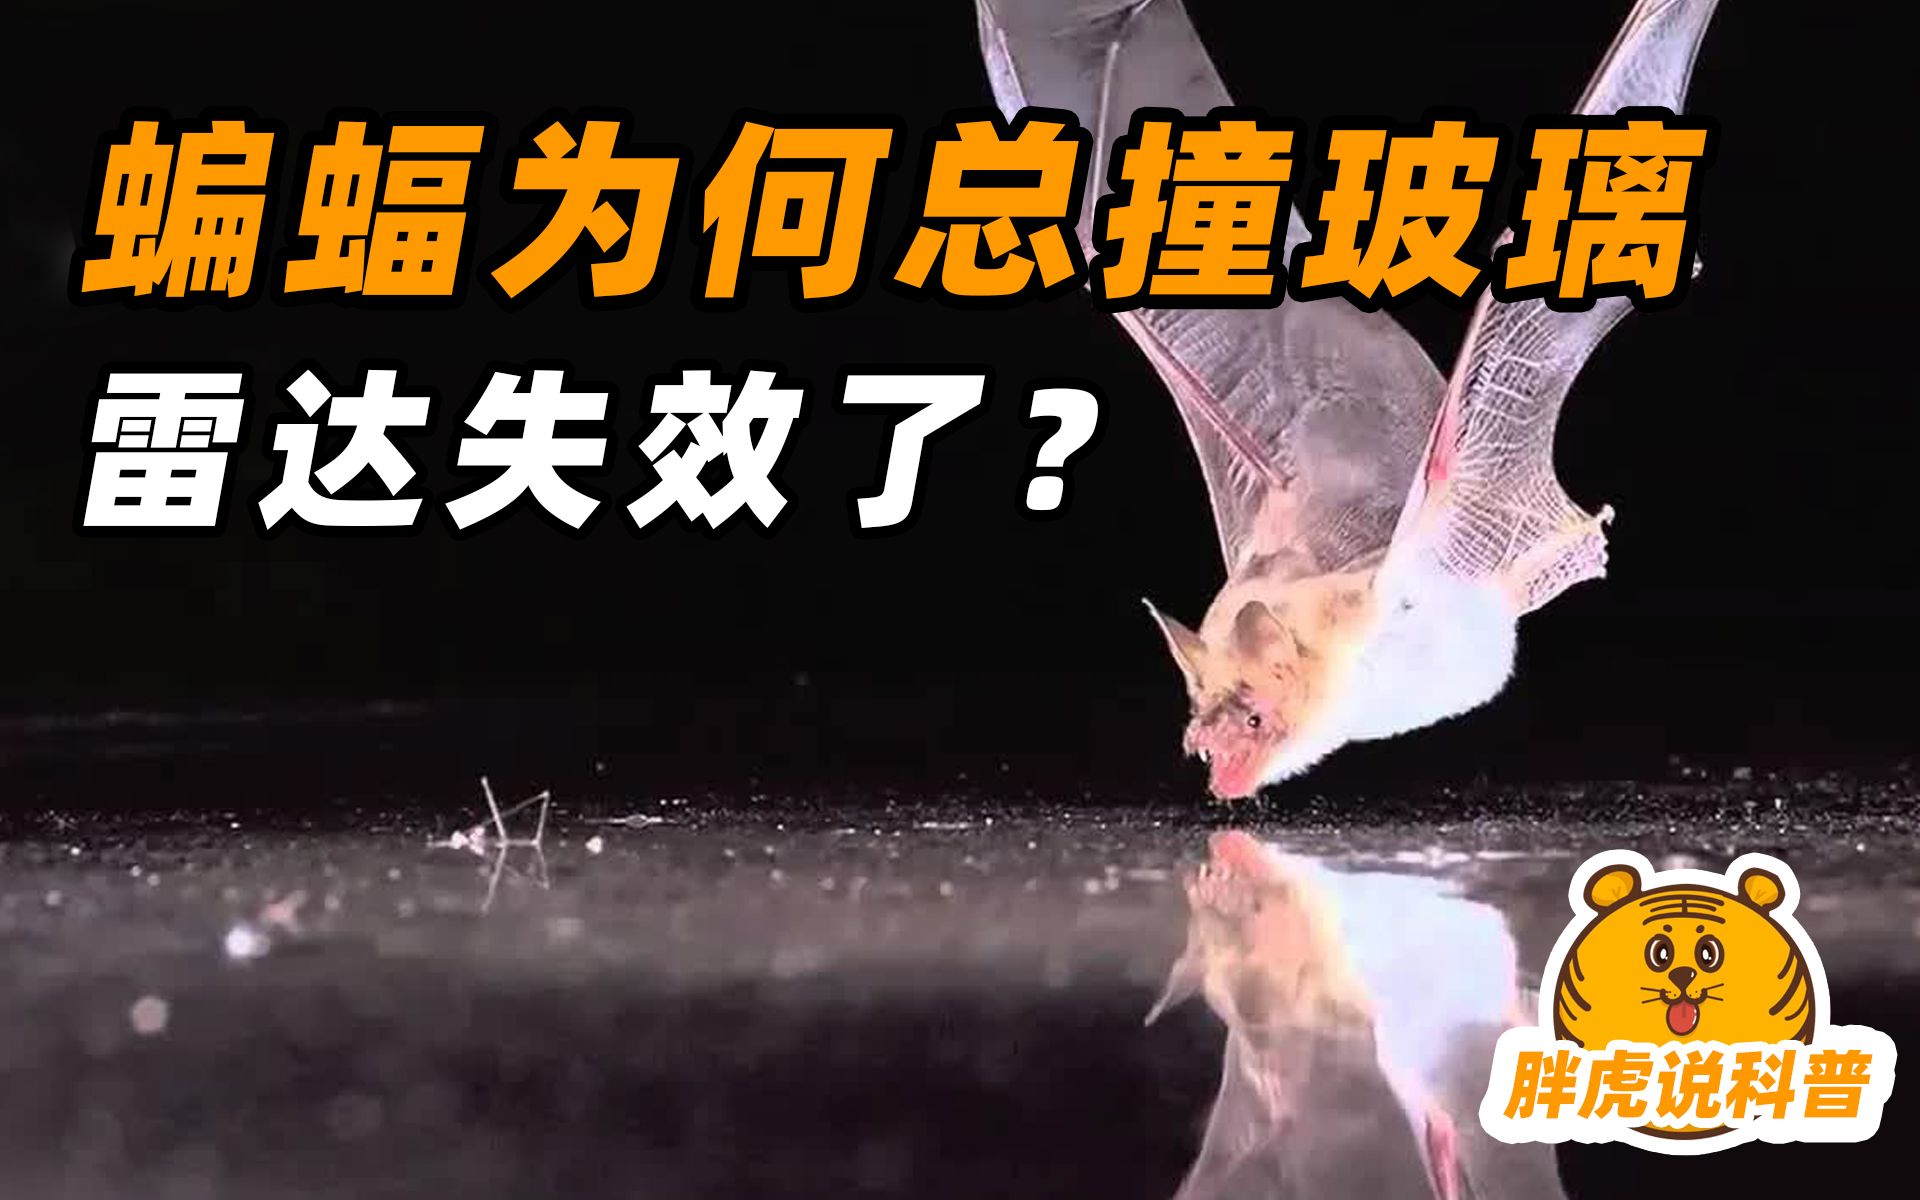 蝙蝠为什么会撞玻璃？难道“雷达”遇到透明的玻璃，也会失灵？